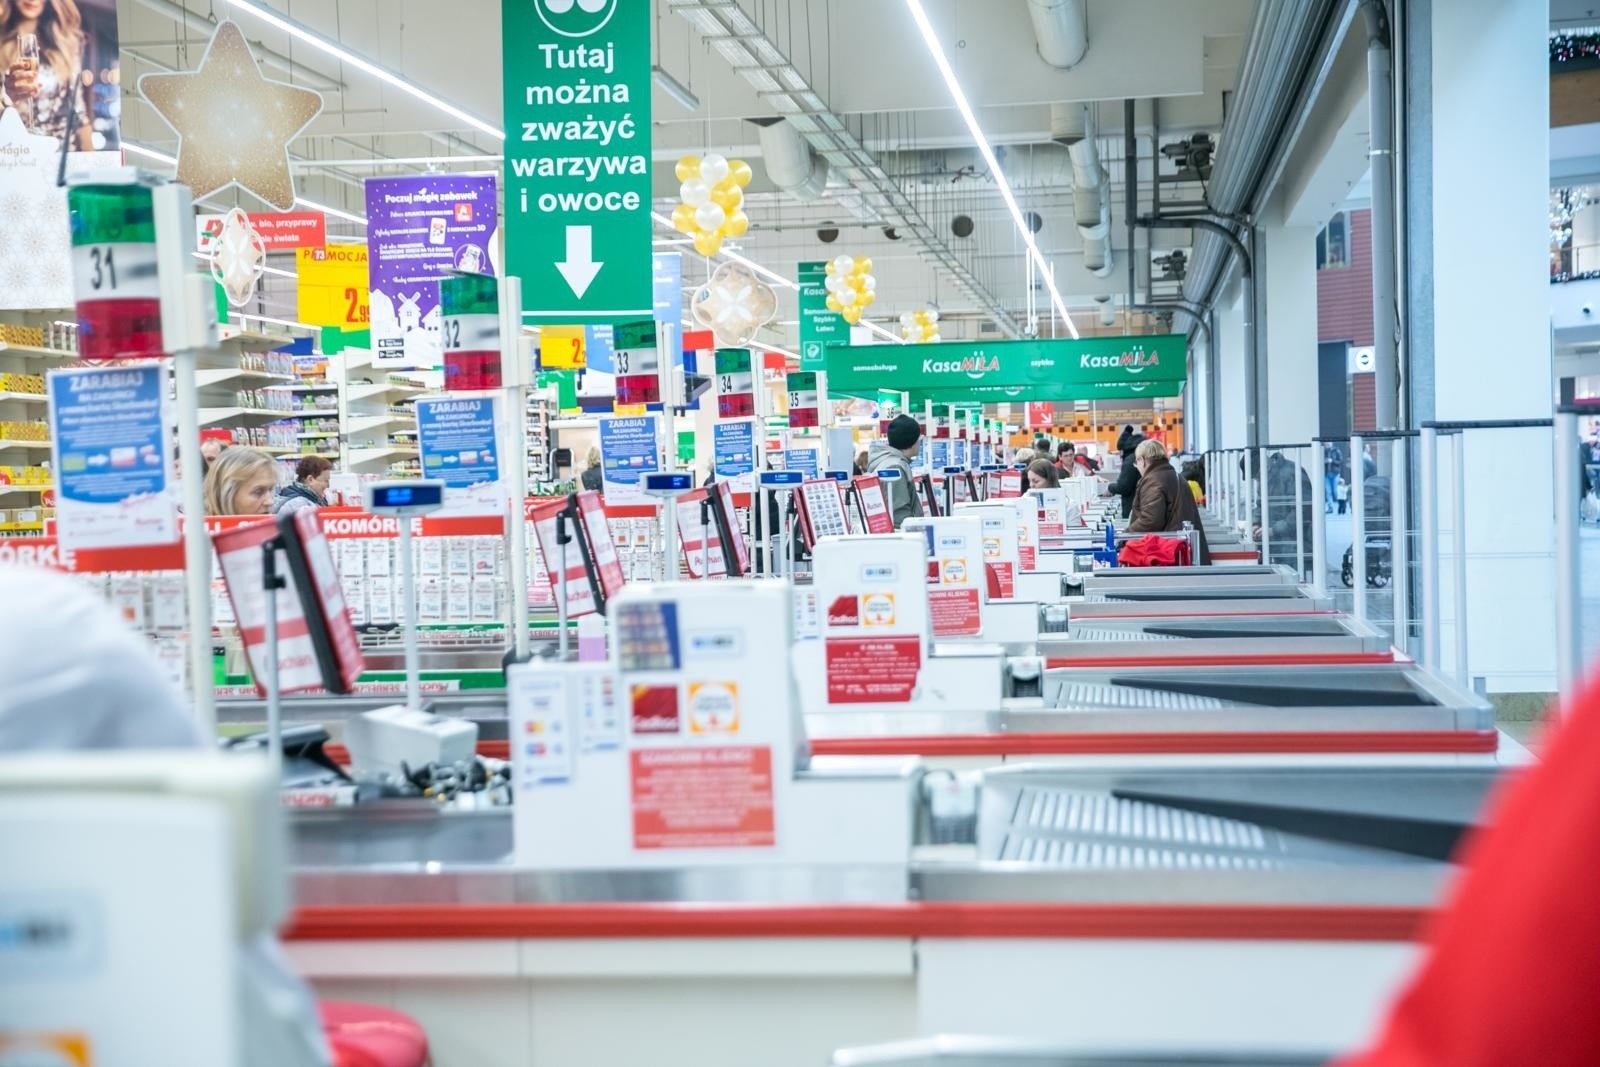 Auchan Przy Ul Kolobrzeskiej 32 W Gdansku Wprowadza Ciche Godziny Dla Klientow Z Autyzmem Dziennik Baltycki